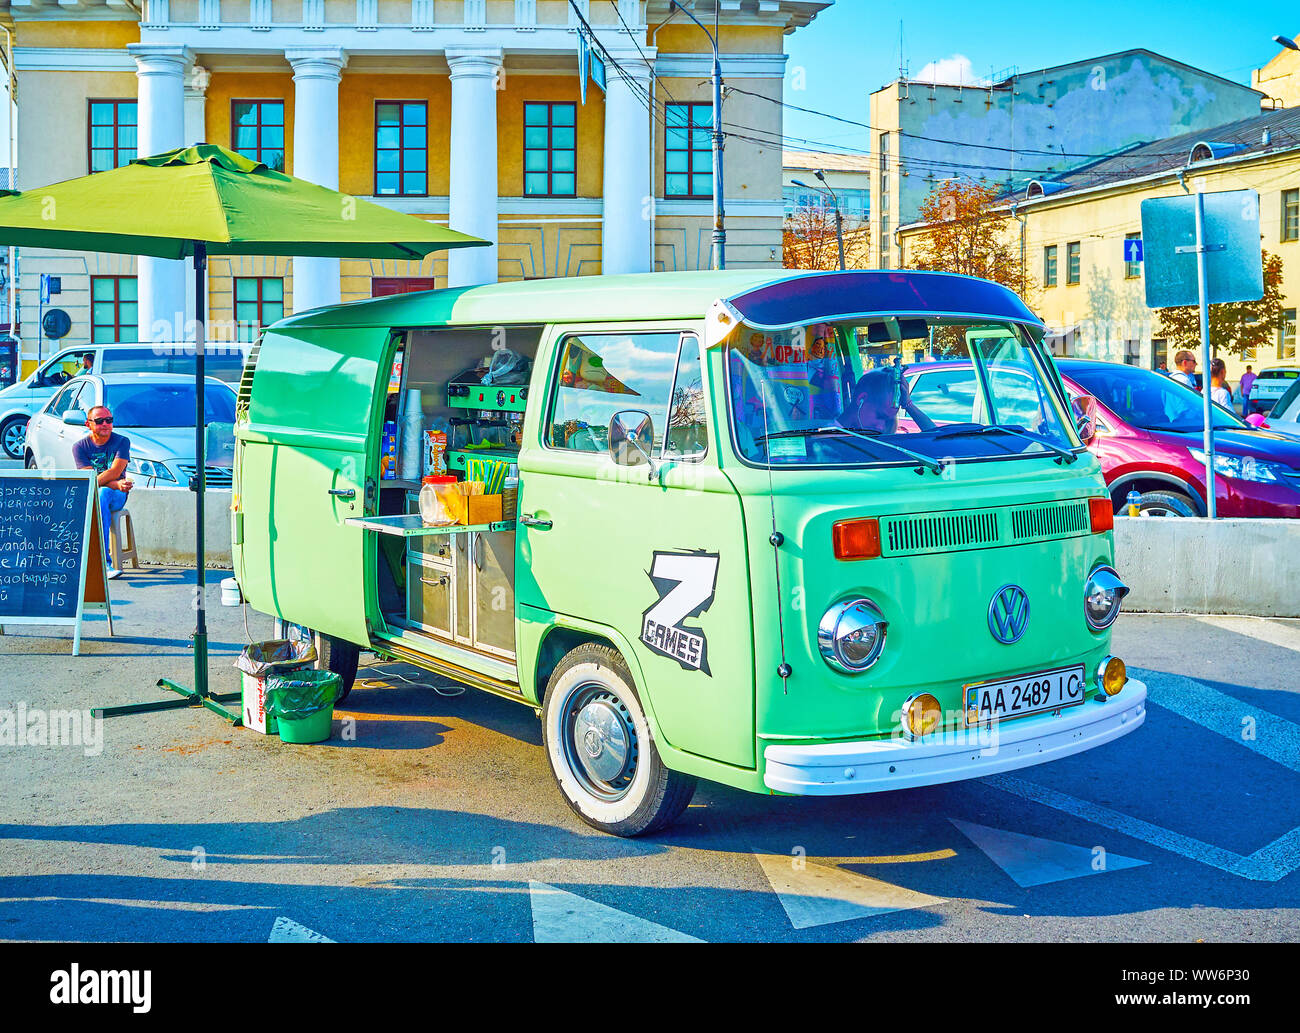 KIEV, UKRAINE - SEPTEMBER 20, 2017: The retro VW bus serves as the cafe on the wheels during the festives in the city, on September 02 in Kiev Stock Photo